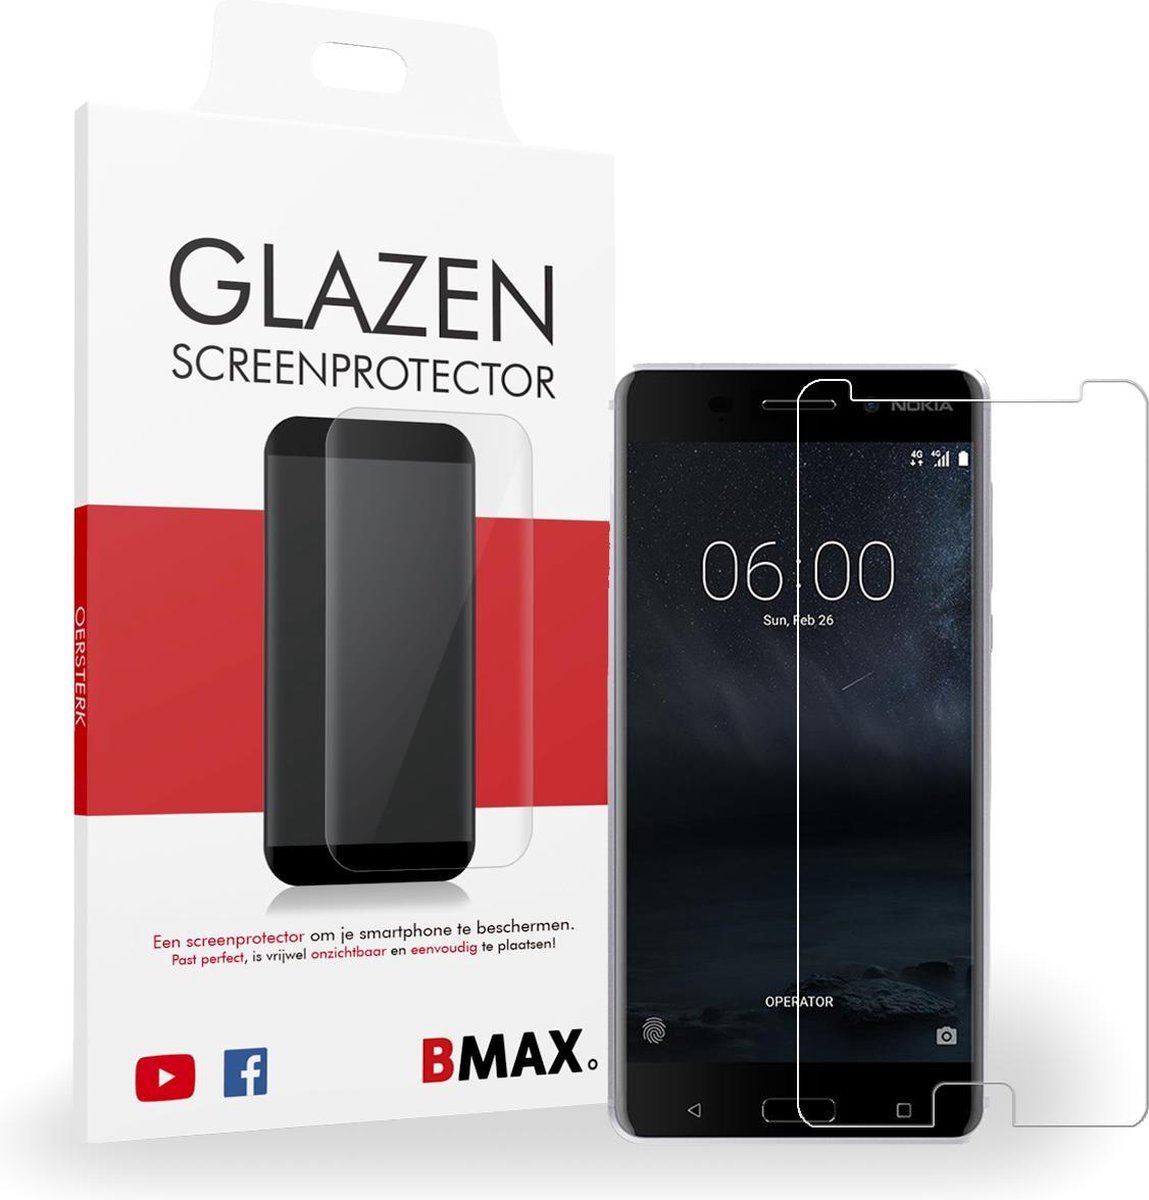 BMAX Glazen Screenprotector Nokia 6